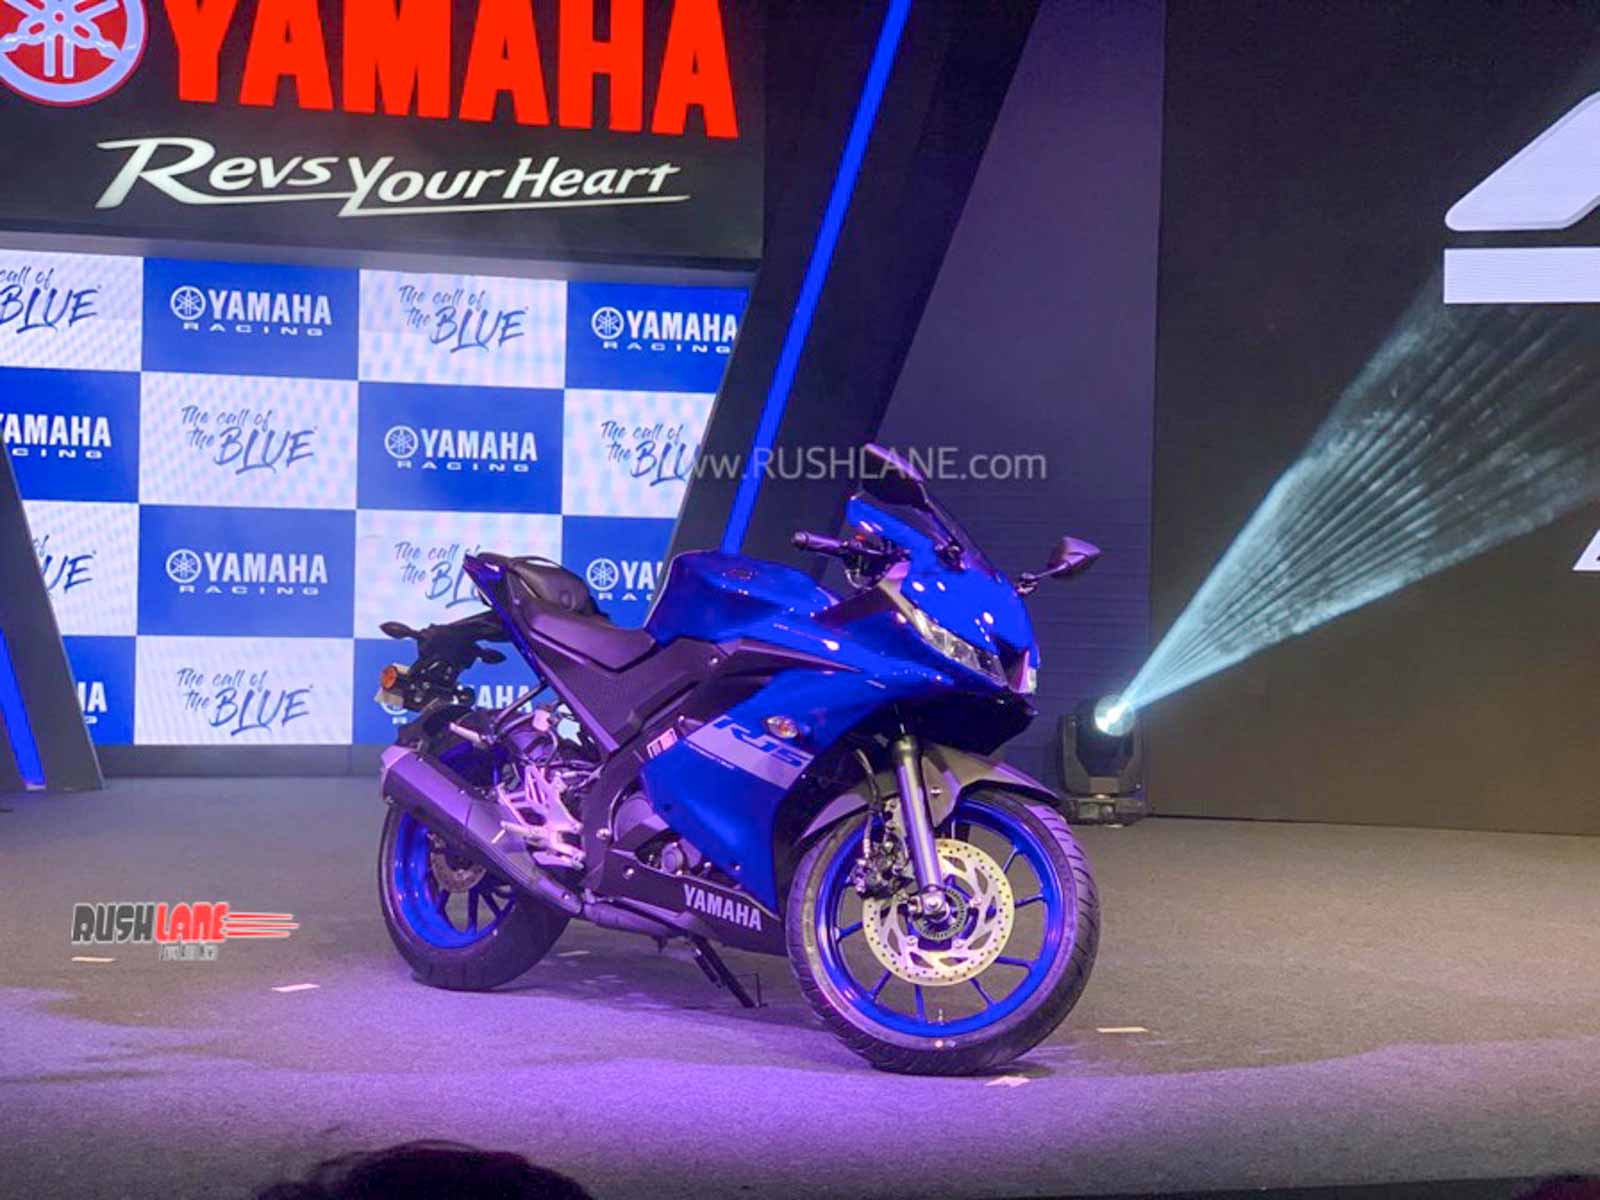 Yamaha R15 V3 BS6